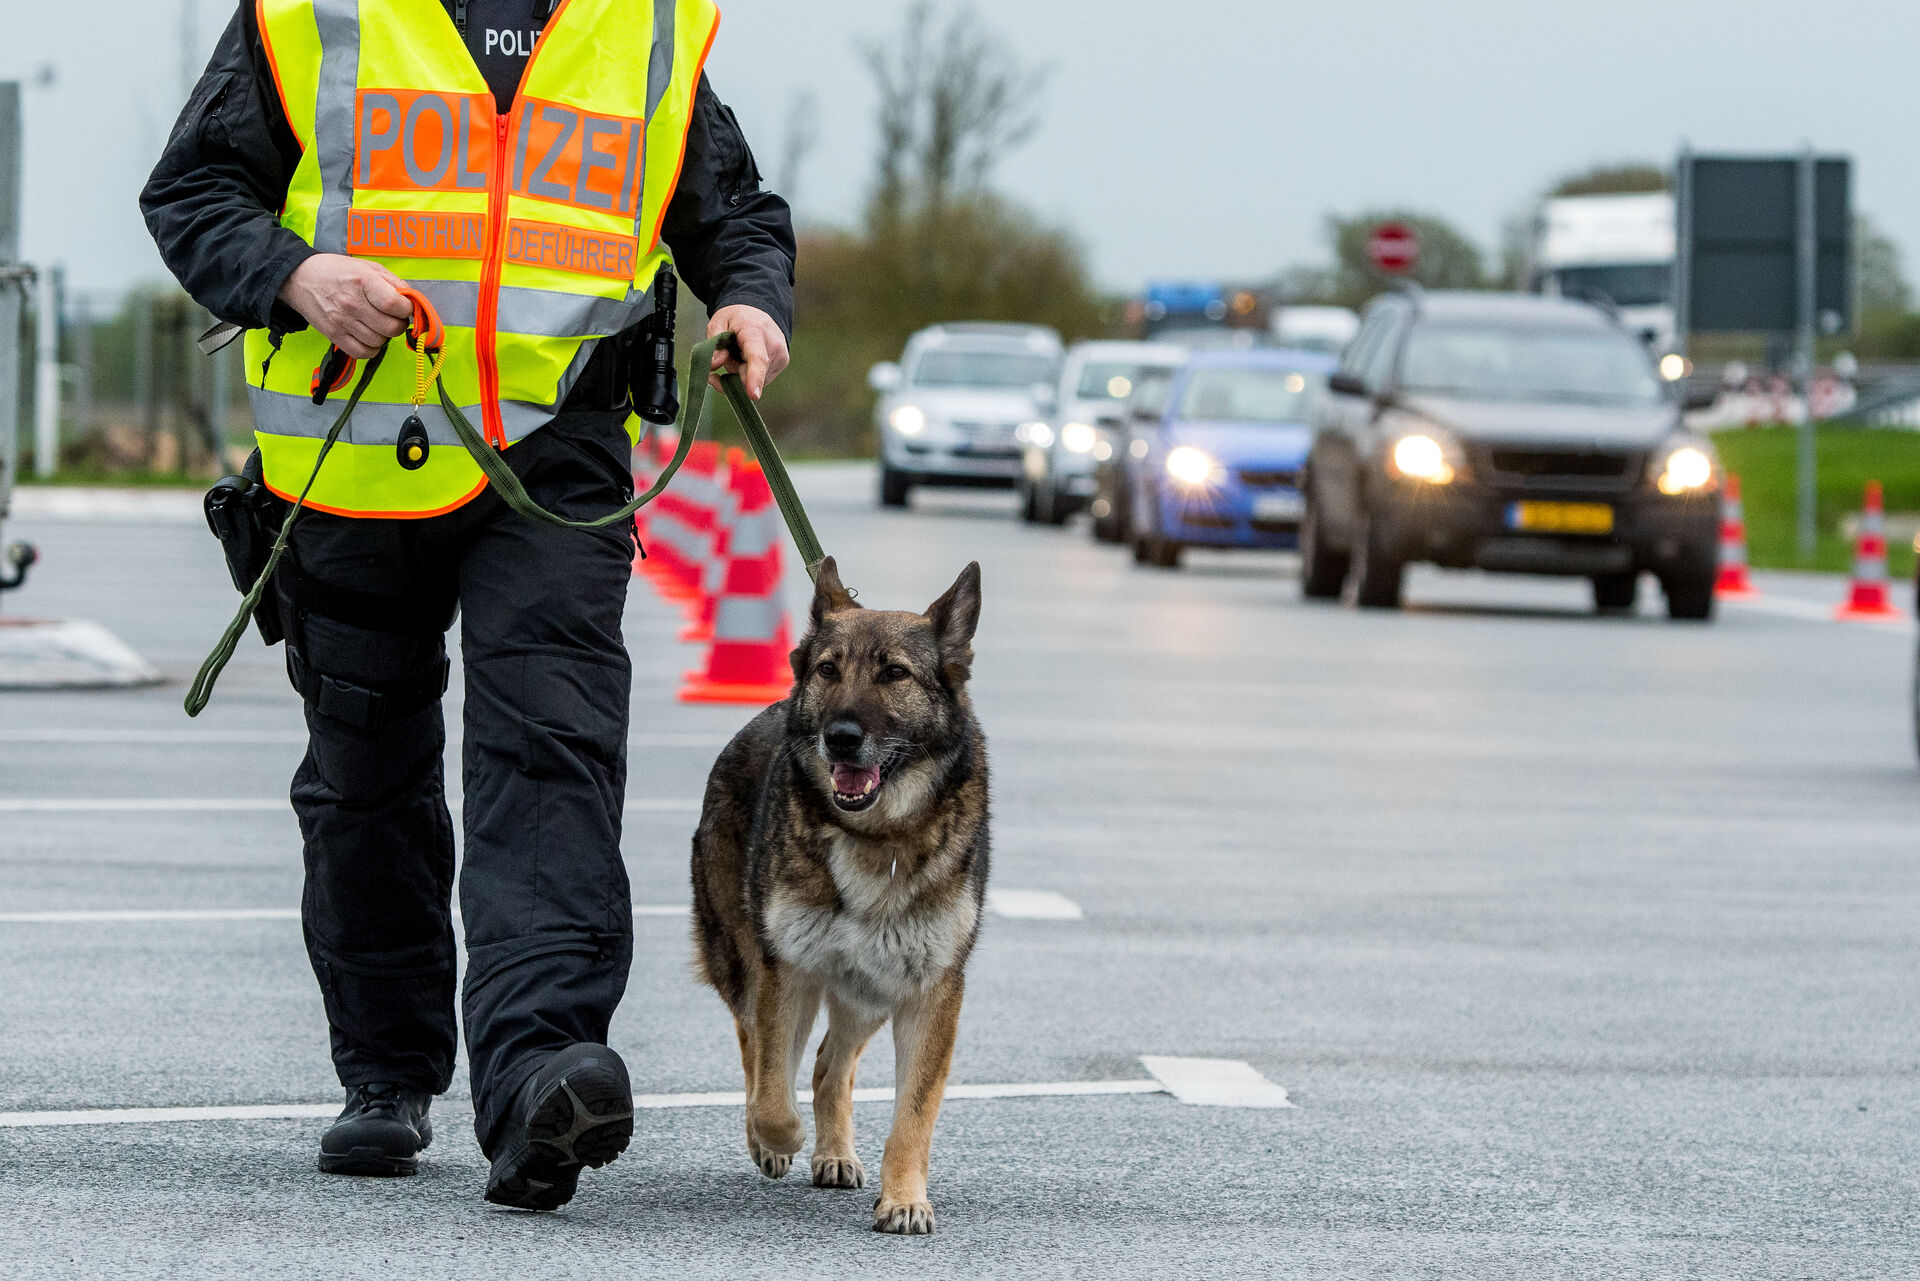  Ein Spürhund läuft auf der Straße neben einem Polizisten an der Leine.